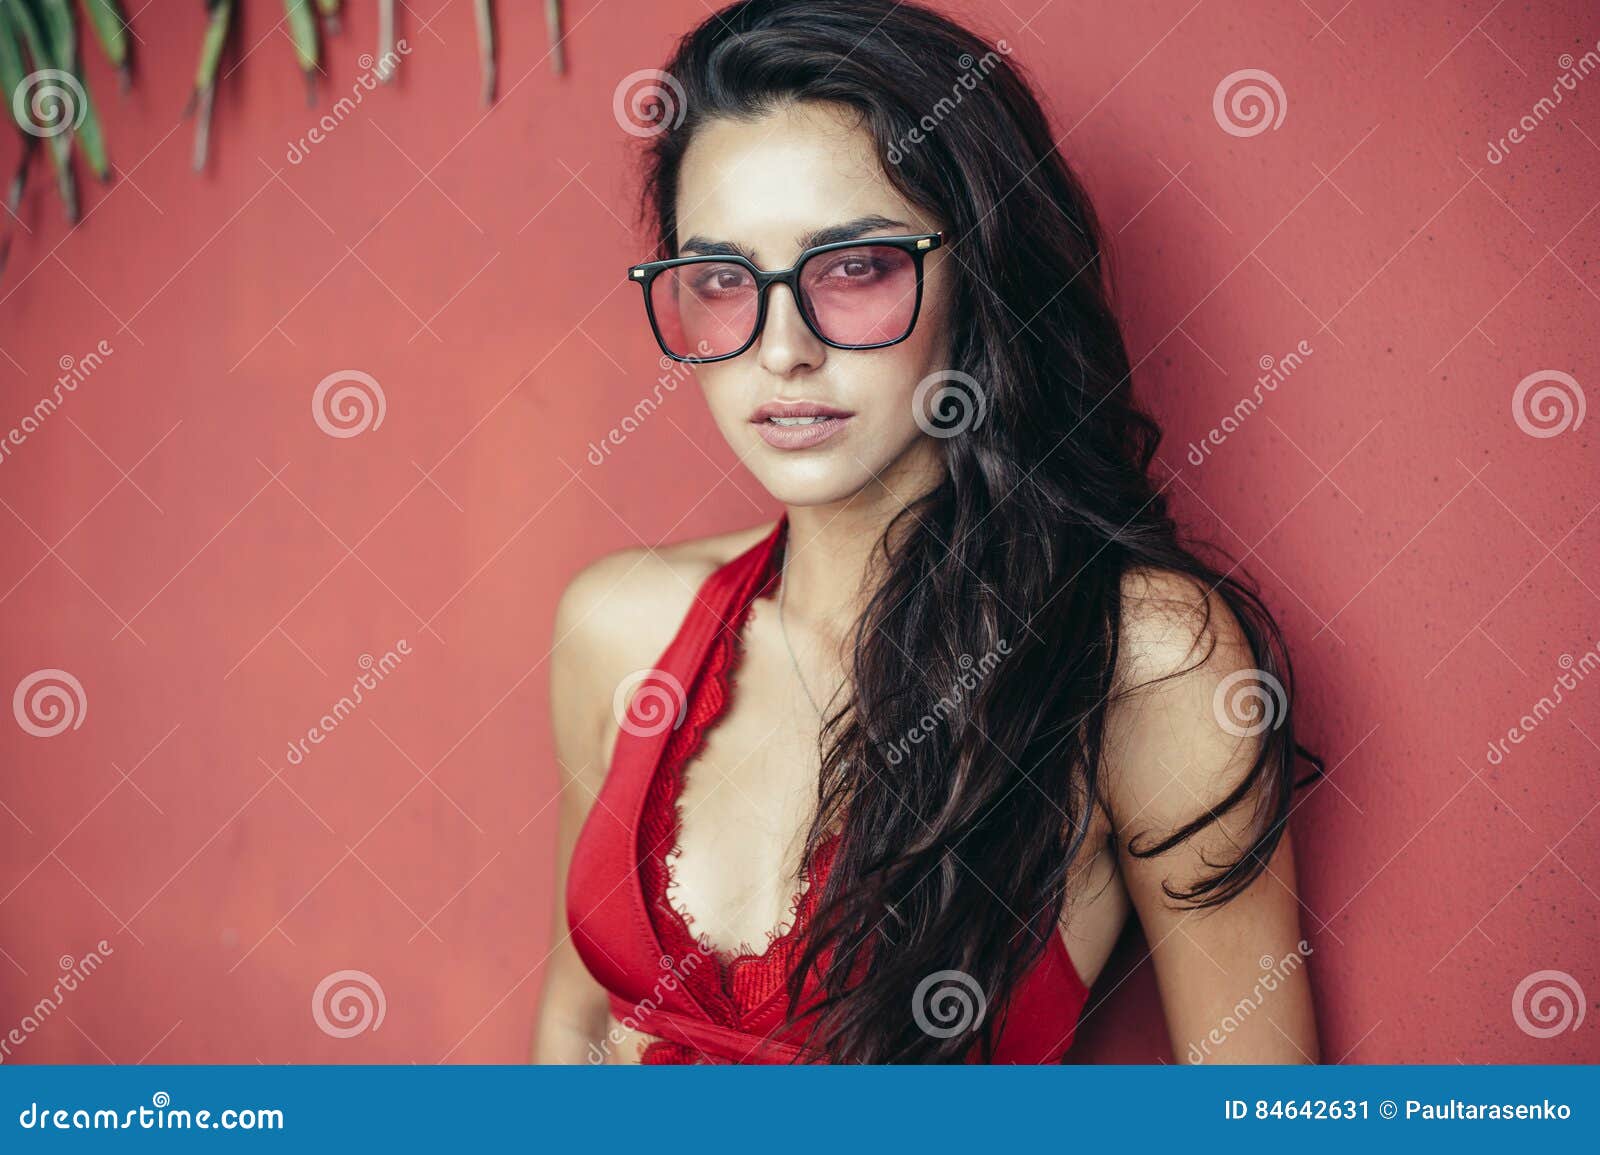 Beautiful Girl In Glasses Stock Image Image Of Sensual 84642631 